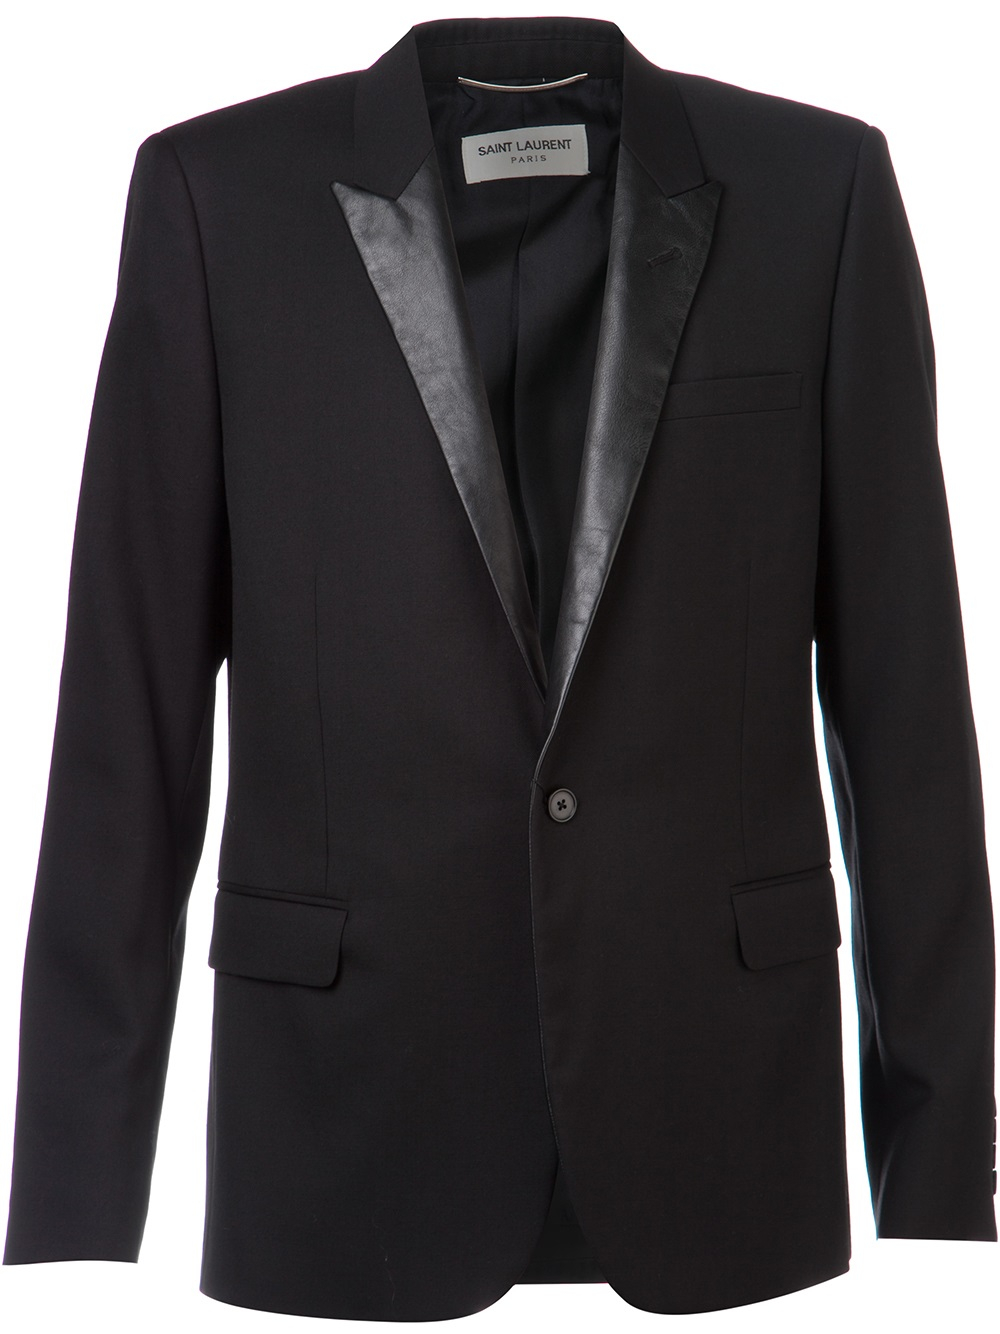 Lyst - Saint laurent Leather Lapel Jacket in Black for Men